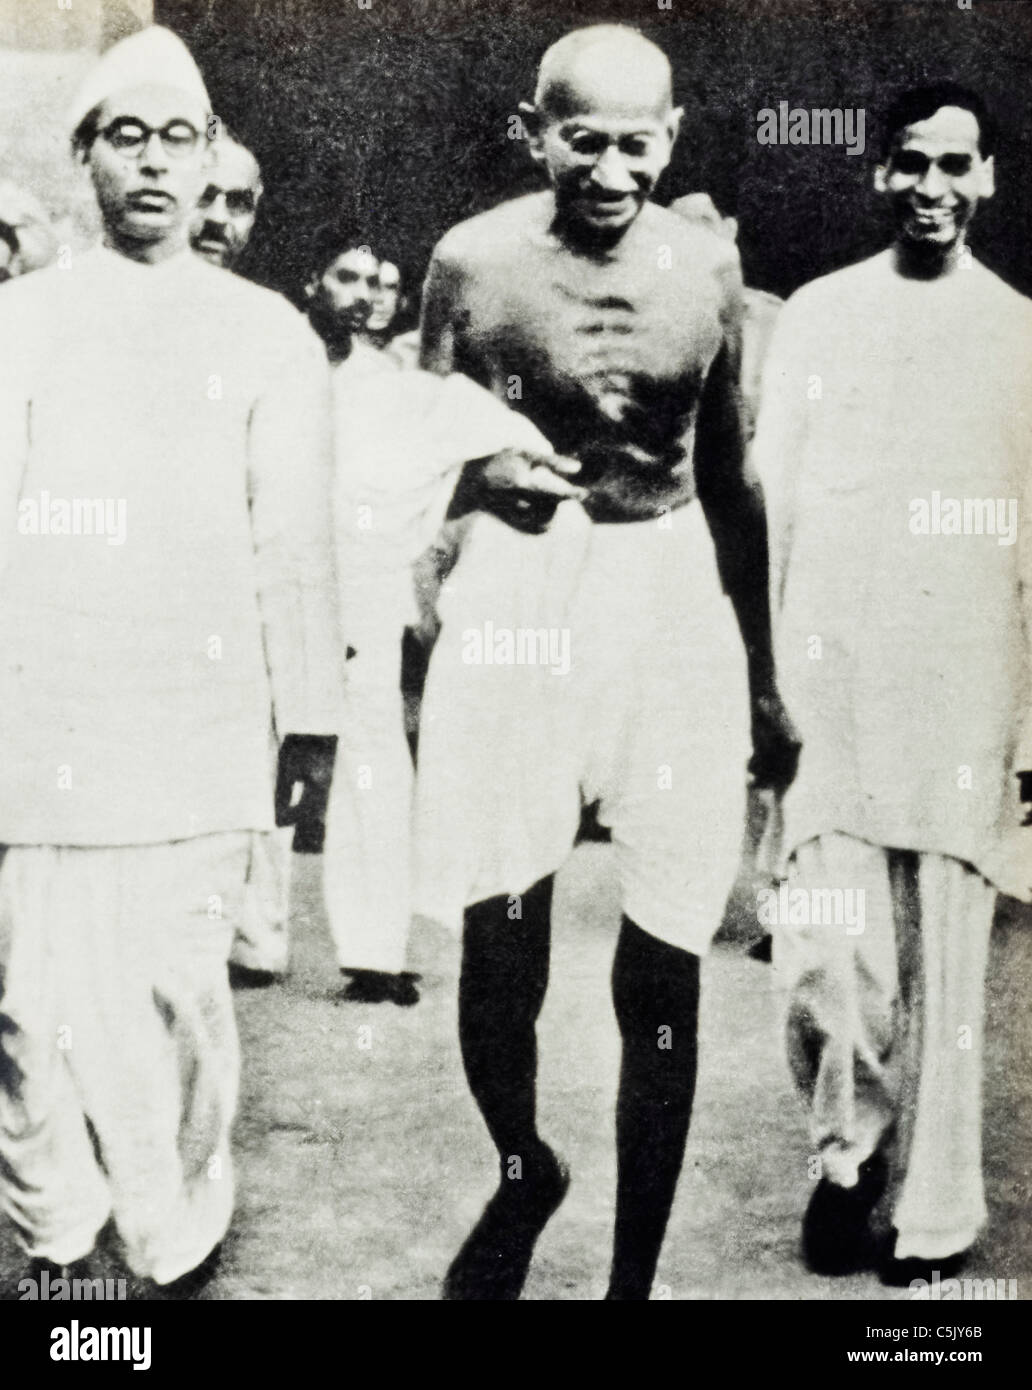 Mahatma Gandhi Foto de stock